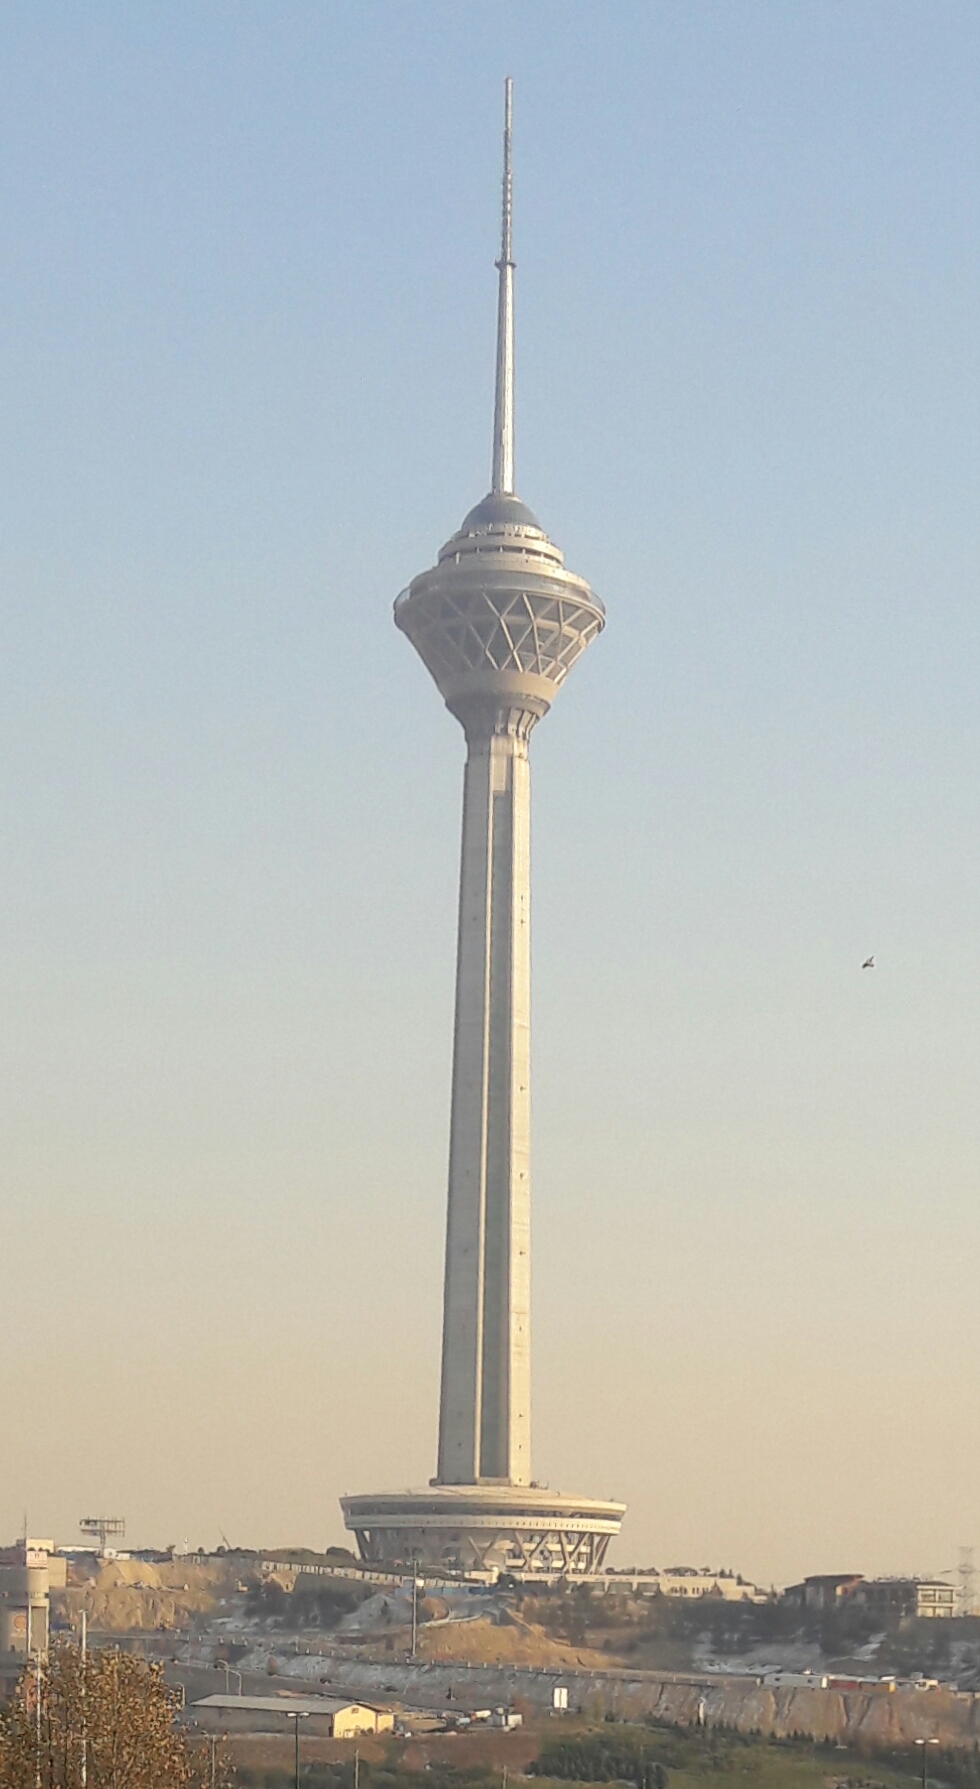 عکسهای برج میلاد تهران